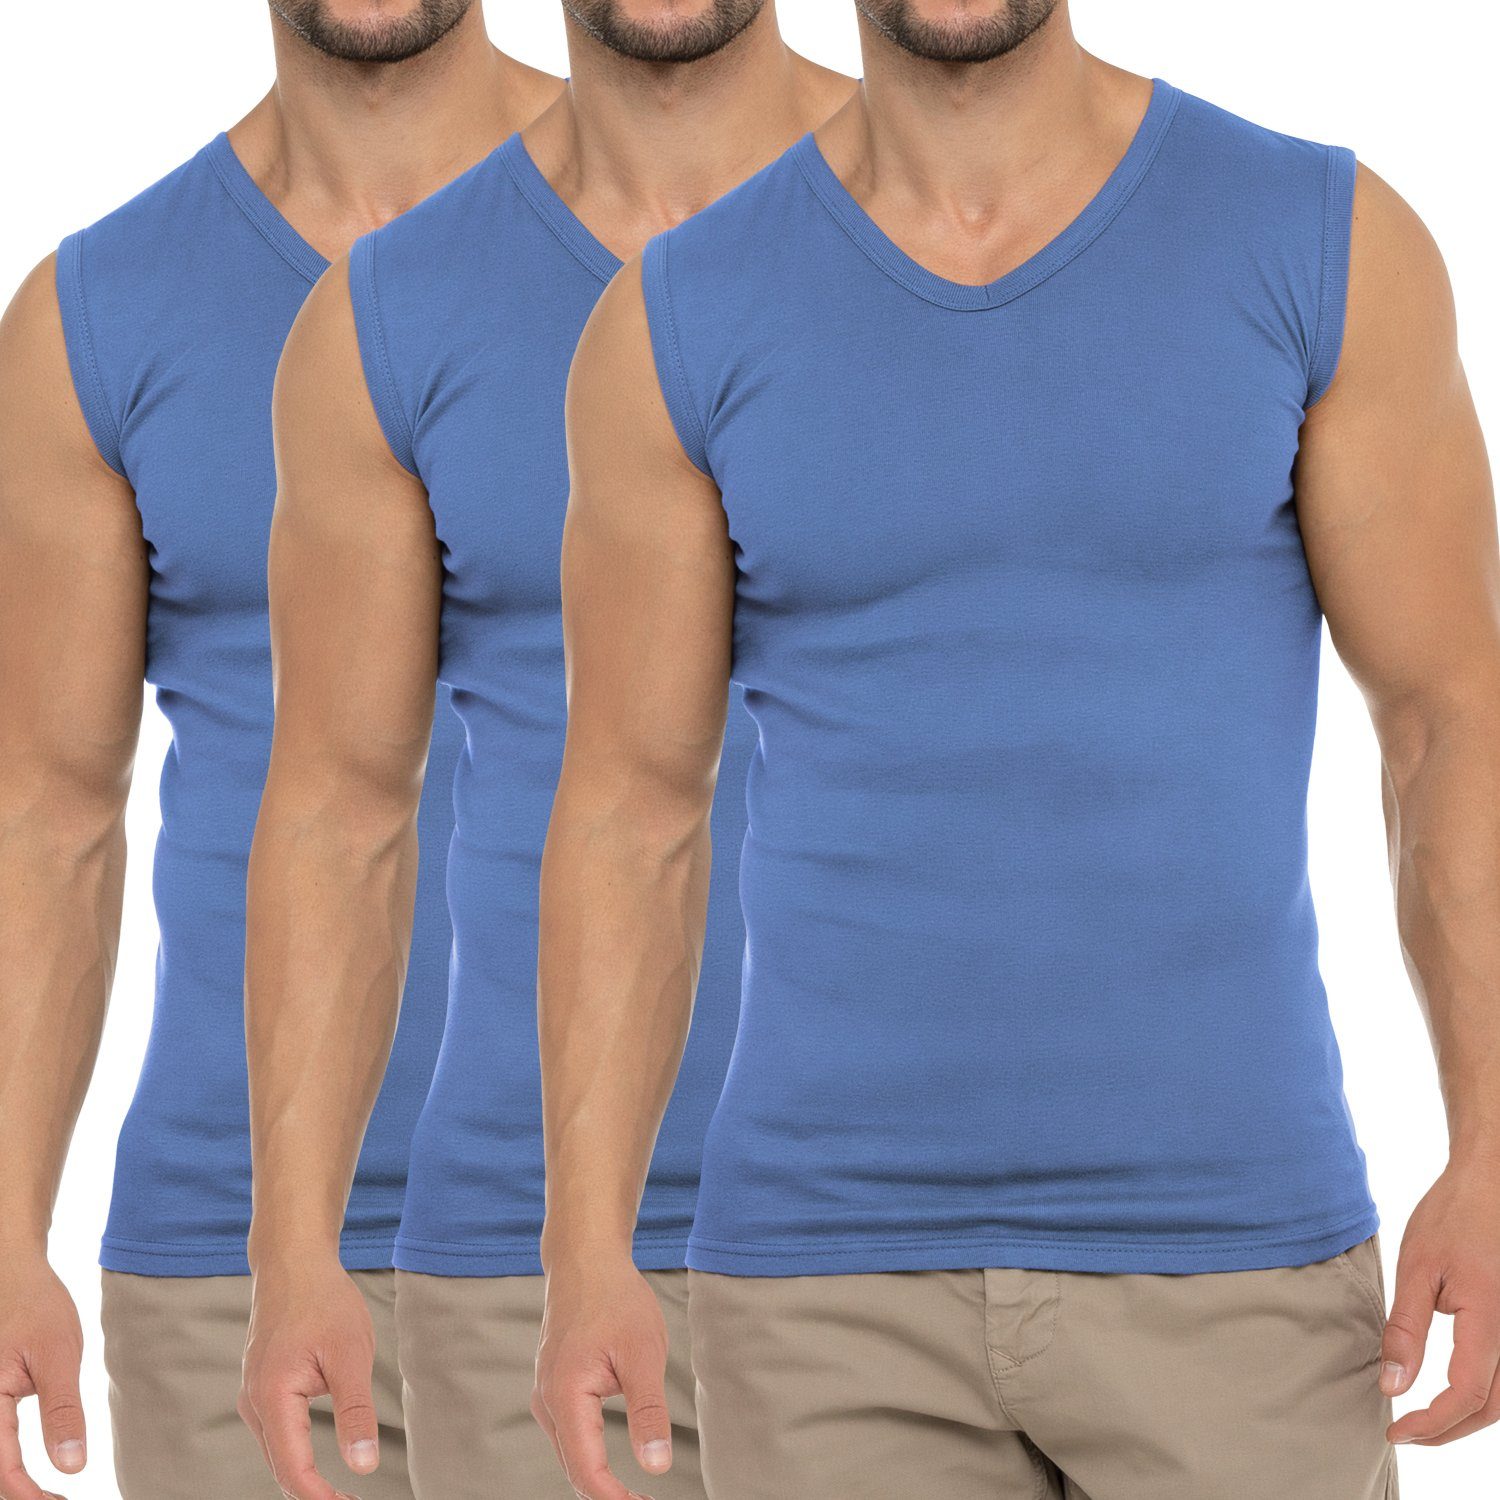 celodoro Unterhemd Herren Business Muskelshirt Carolina Blue Pack) Muscle (3er Shirt V-Neck